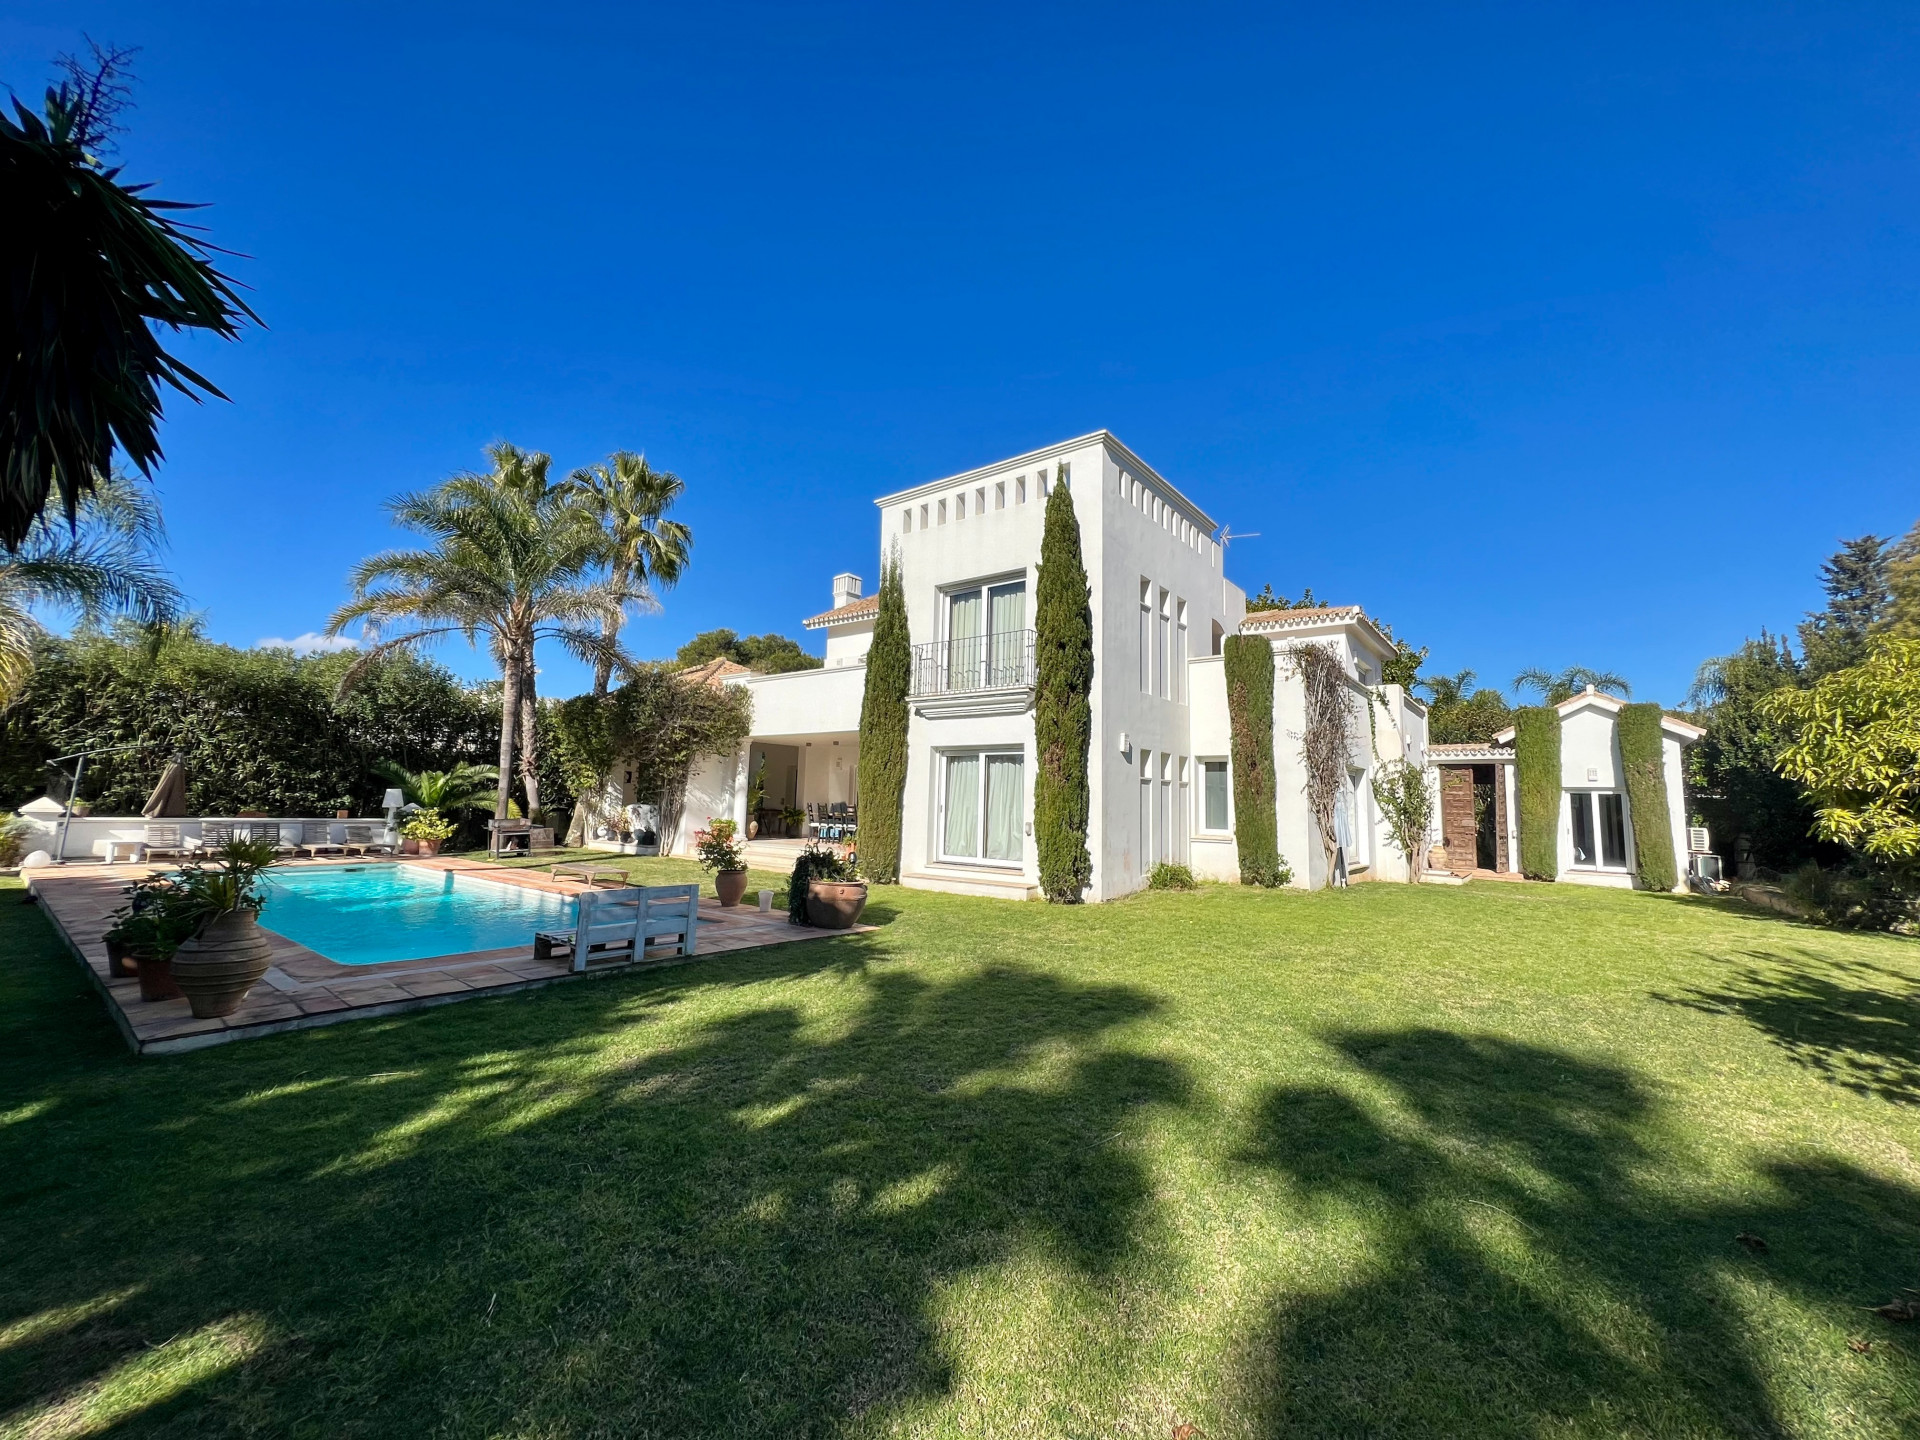 Stunning luxury villa in the prestigious area of Guadalmina Baja / Casasola